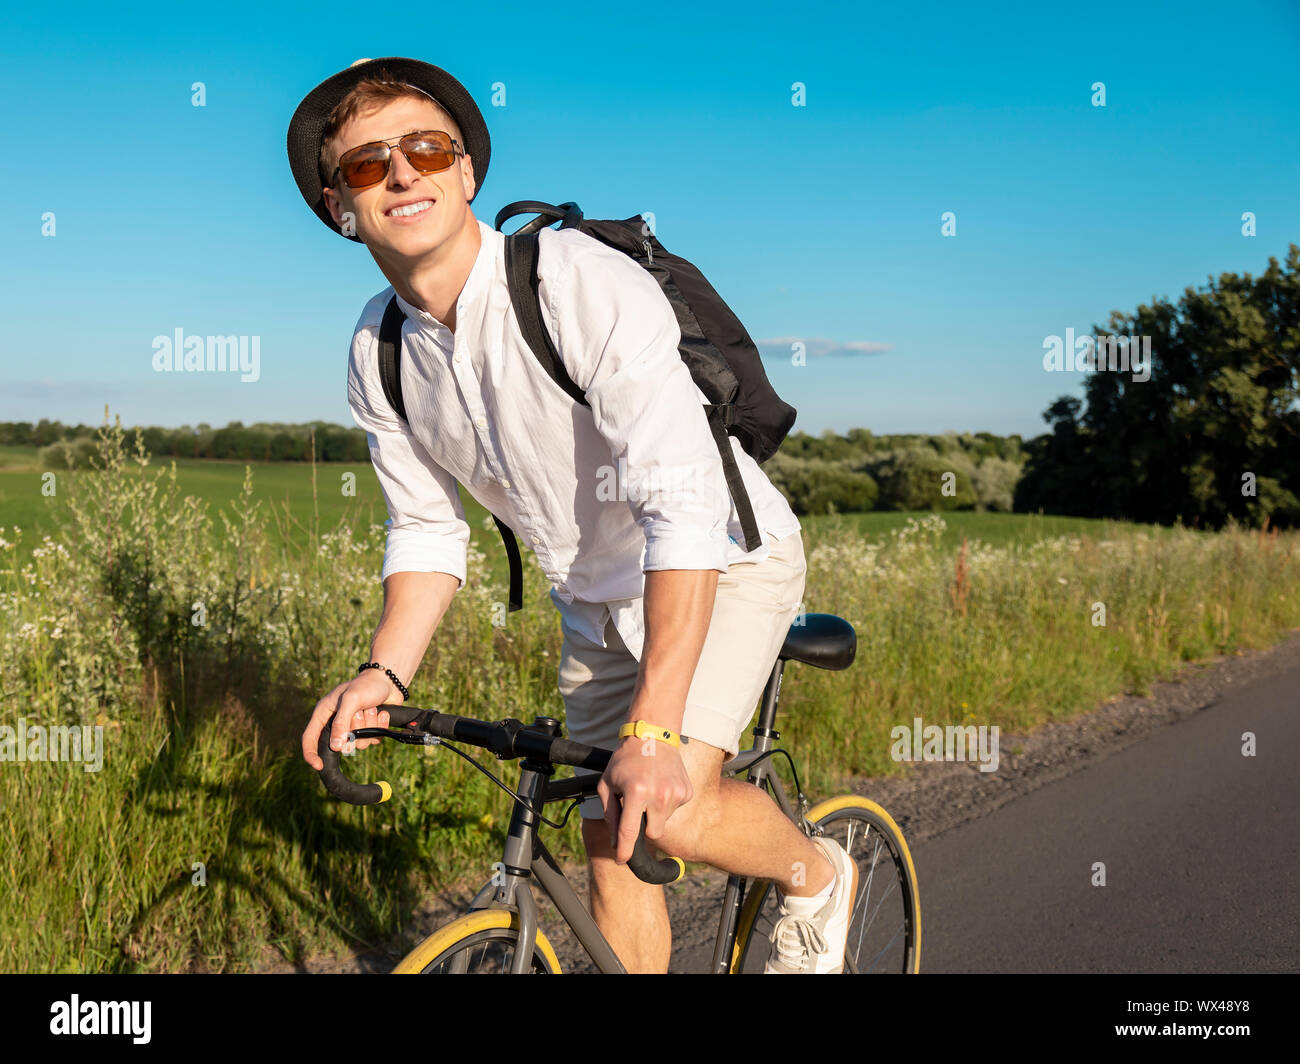 Jeune mec en blanc aime faire du vélo dans la campagne Banque D'Images